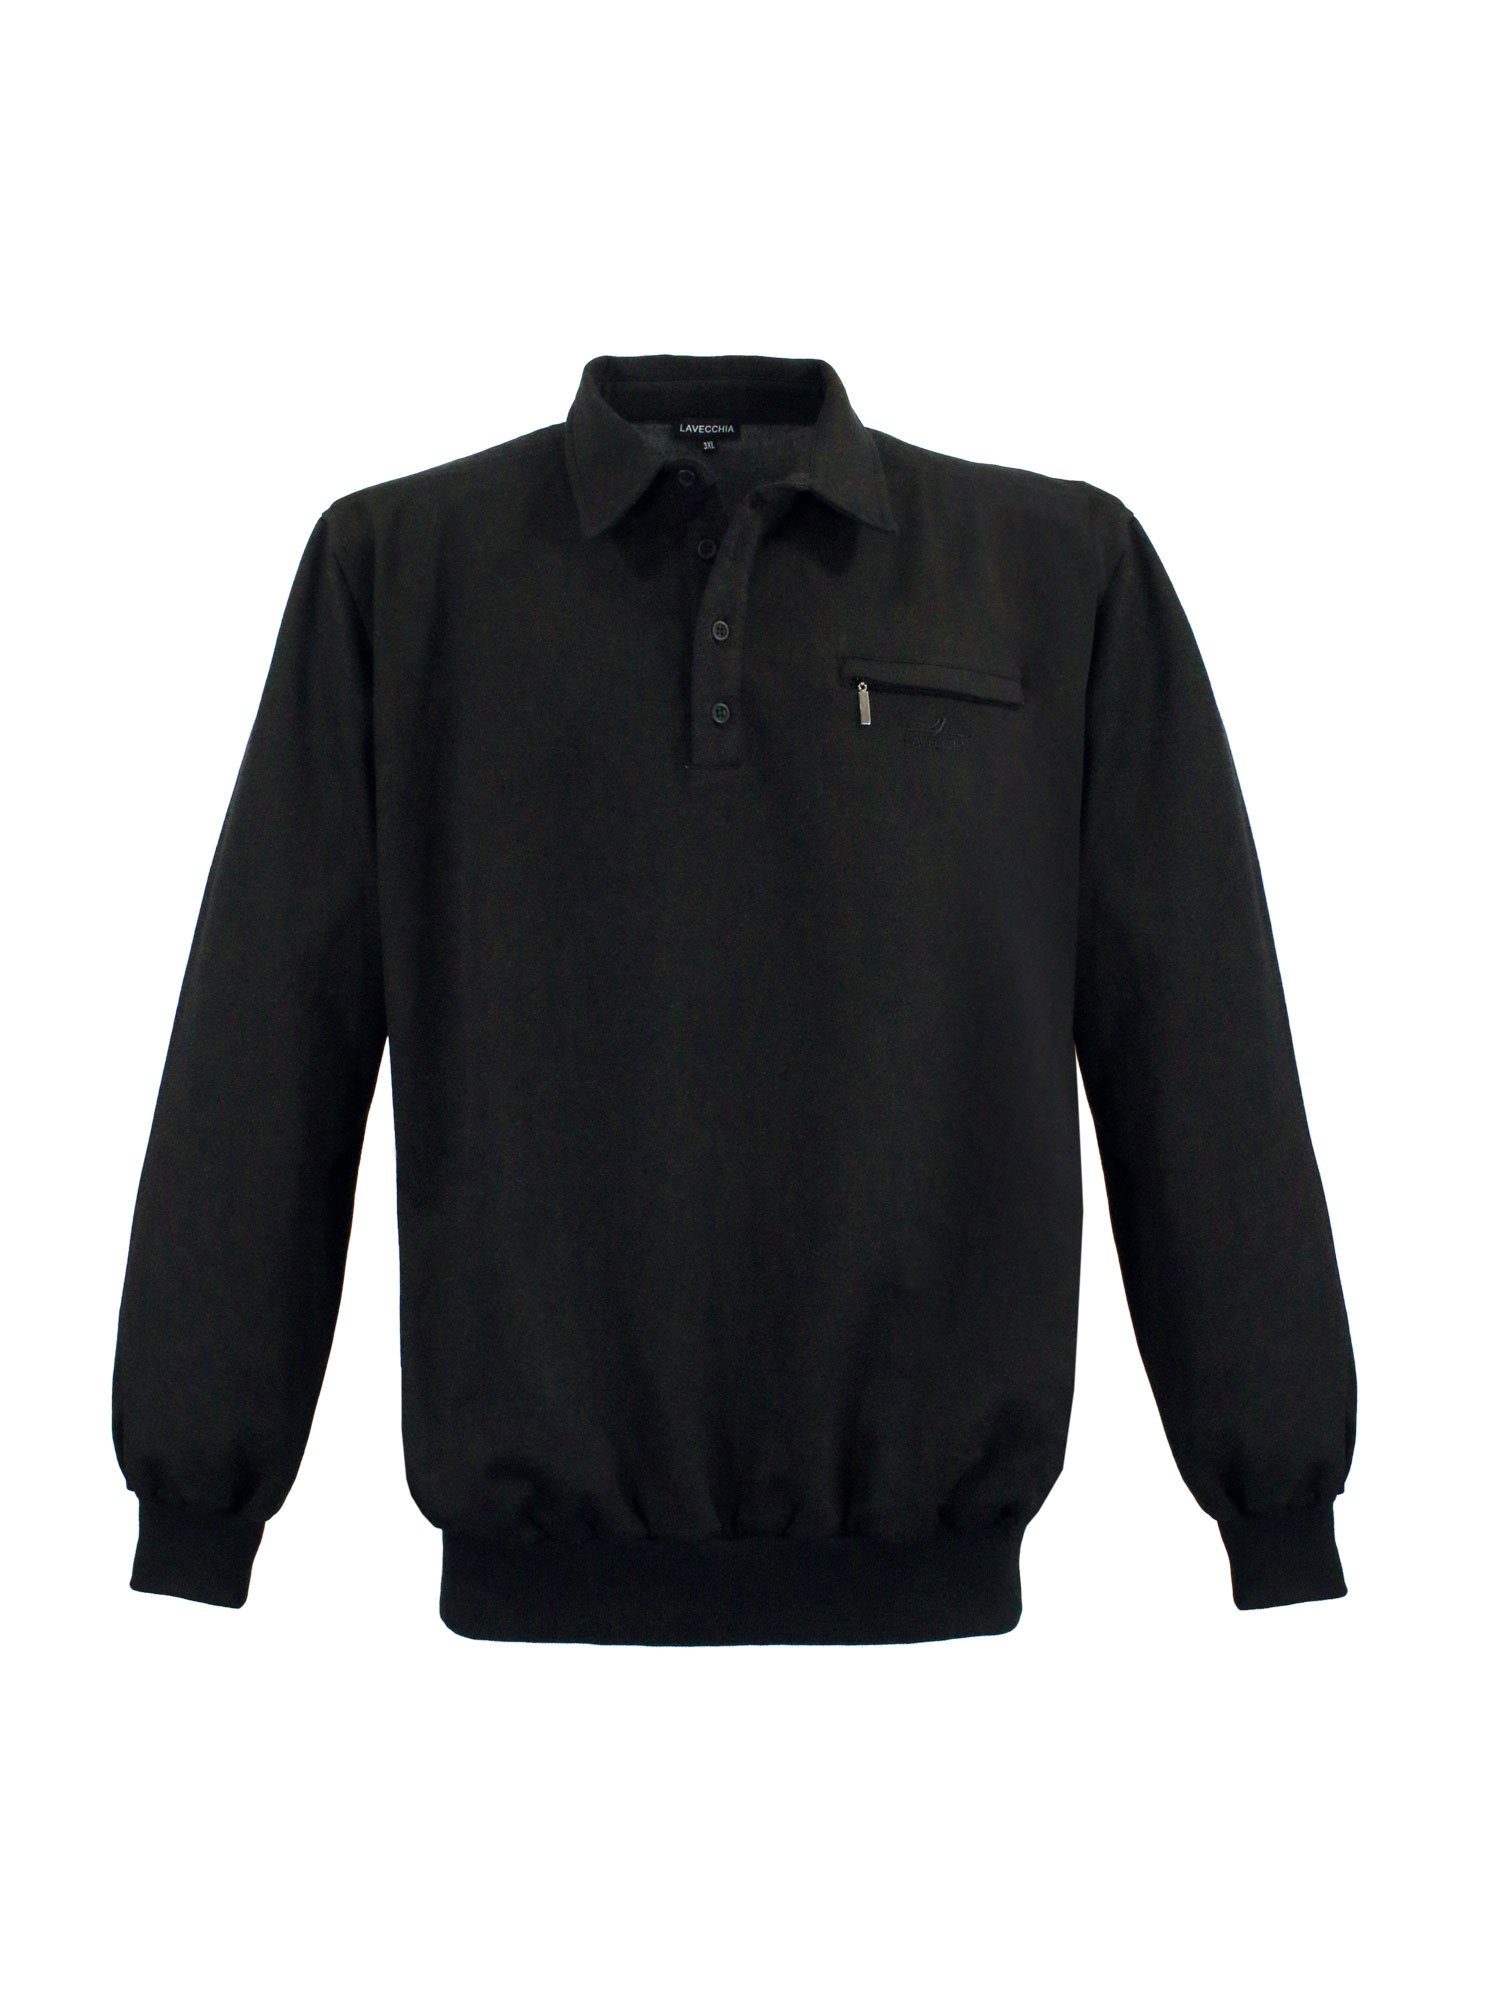 Pullover Pulli schwarz Sweatshirt Sweater Übergrößen Lavecchia LV-705S Sweat